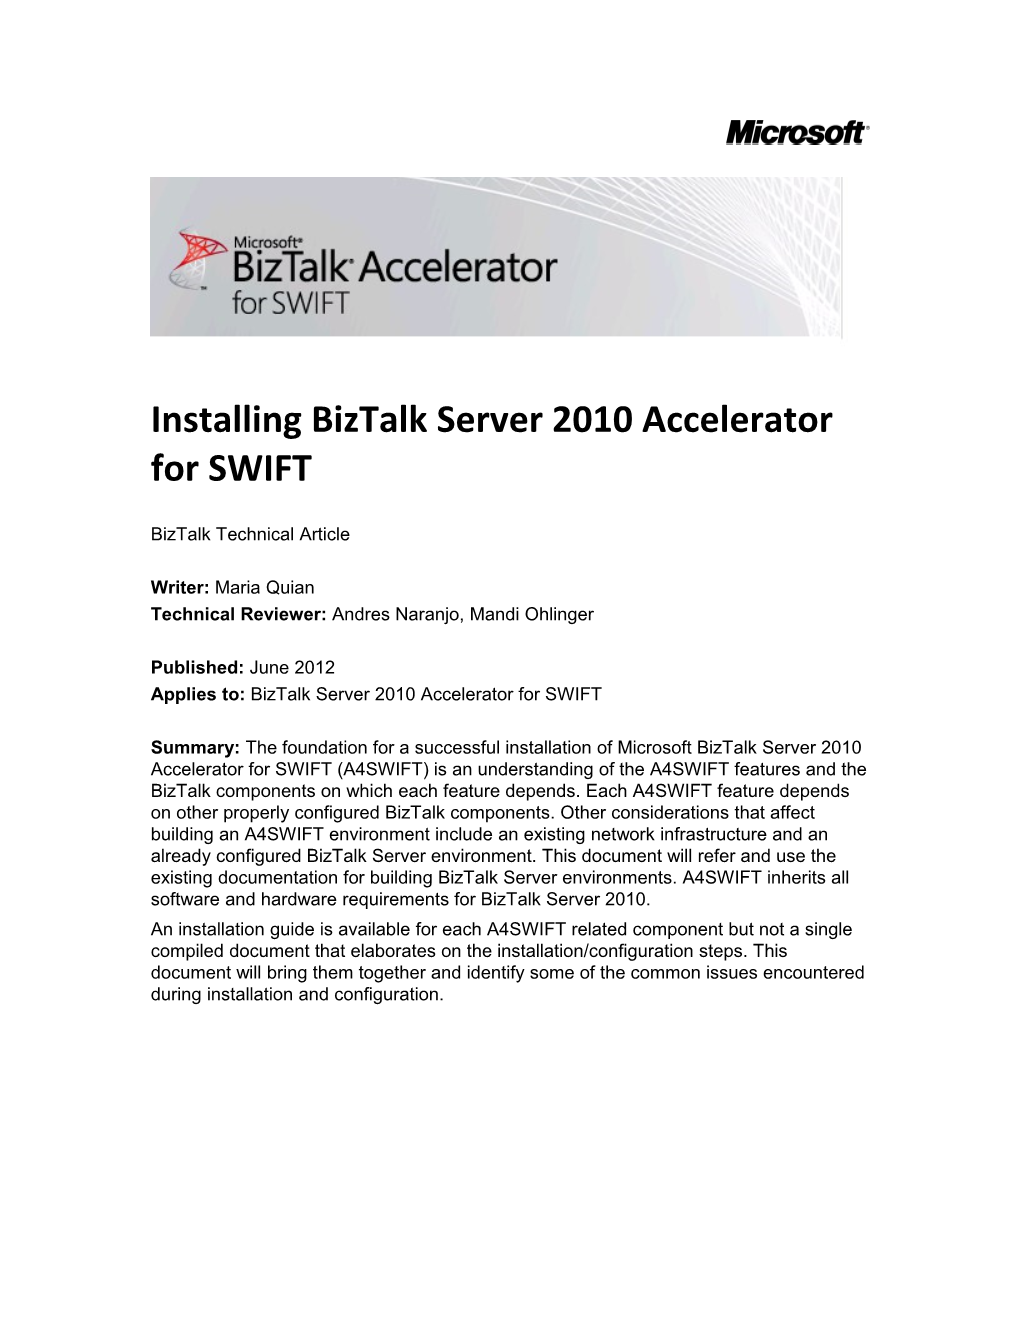 Installing Biztalk Server 2010 Accelerator for SWIFT